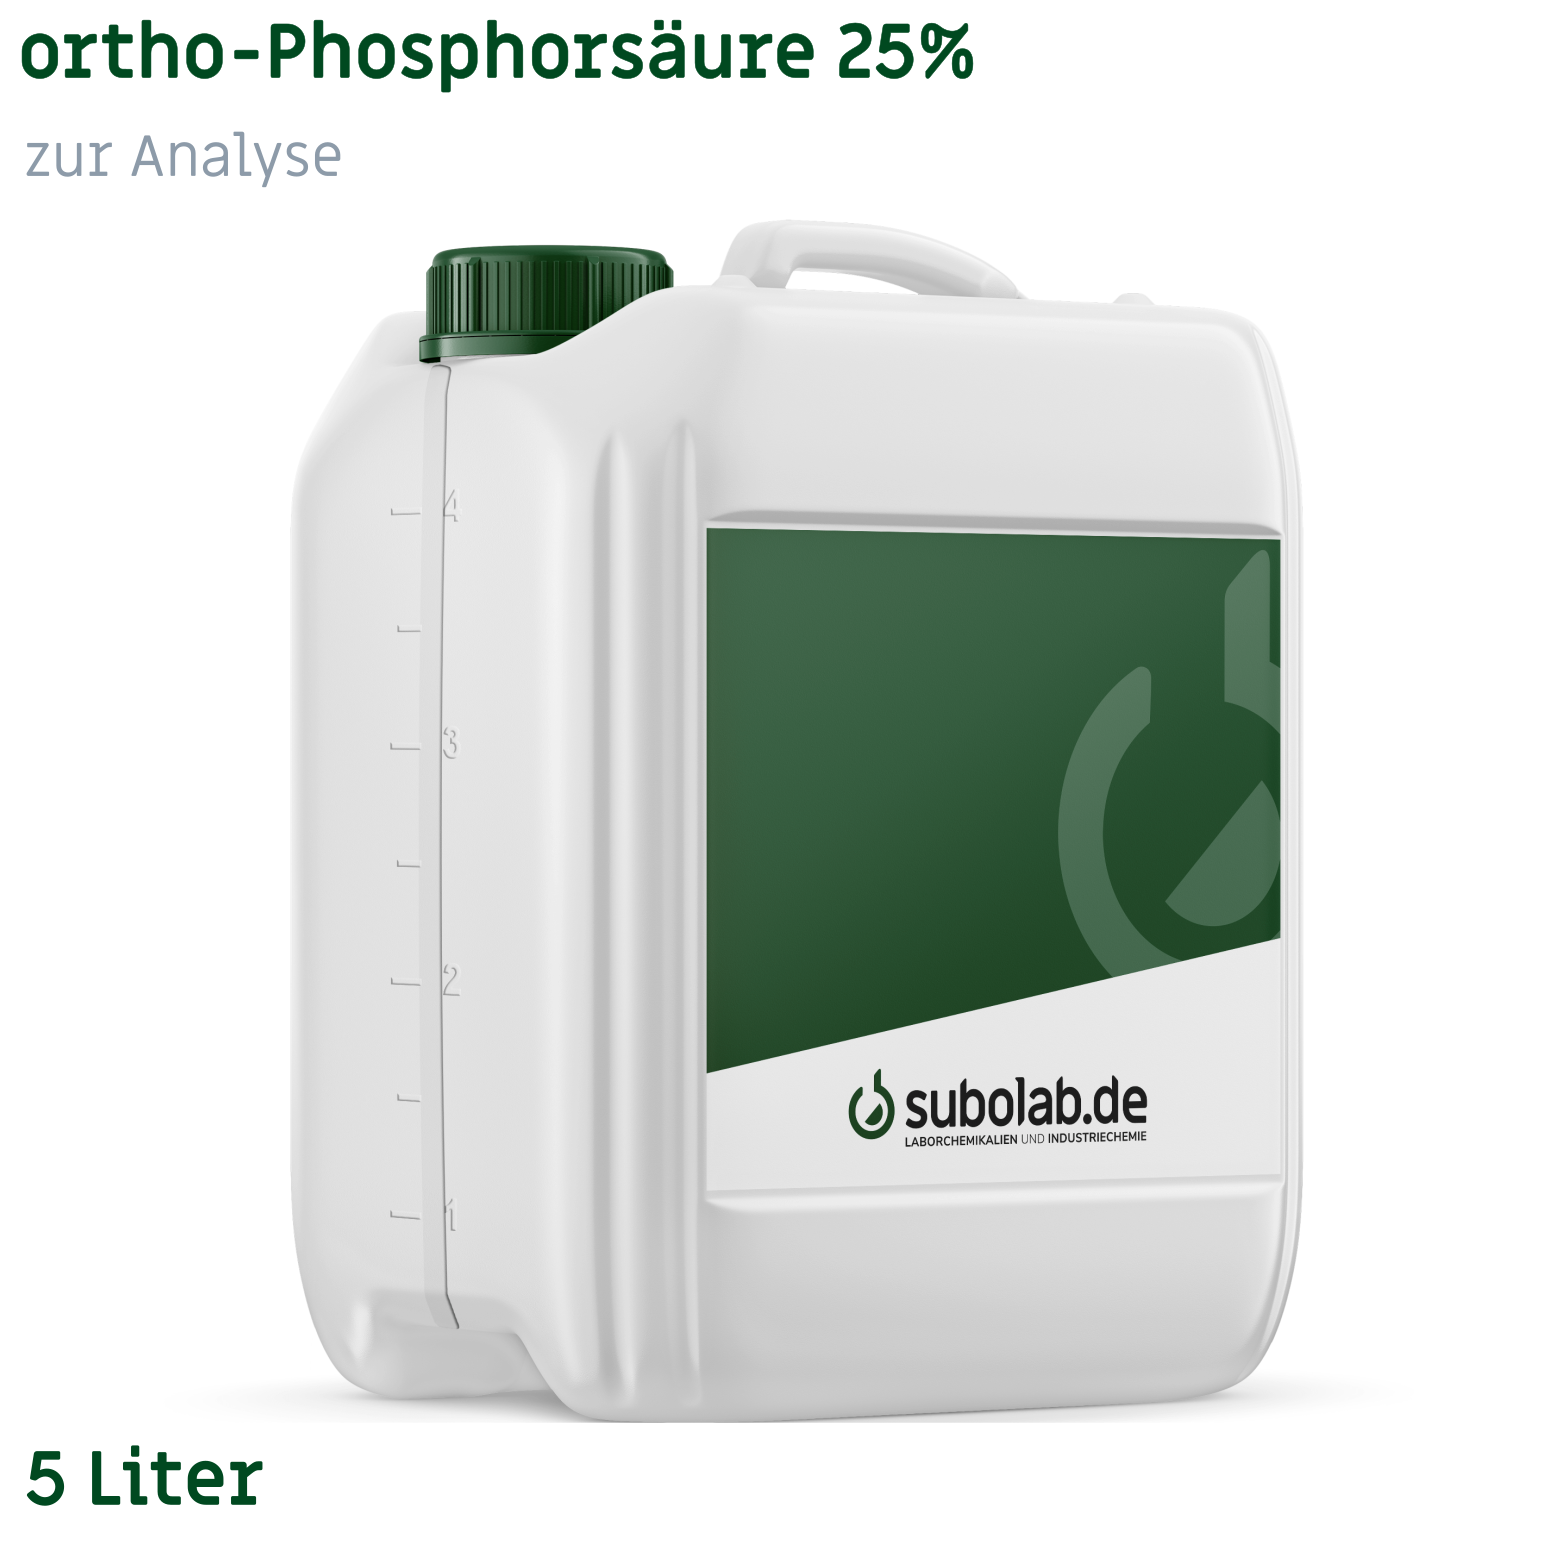 Bild von ortho-Phosphorsäure 25% zur Analyse (5 Liter)